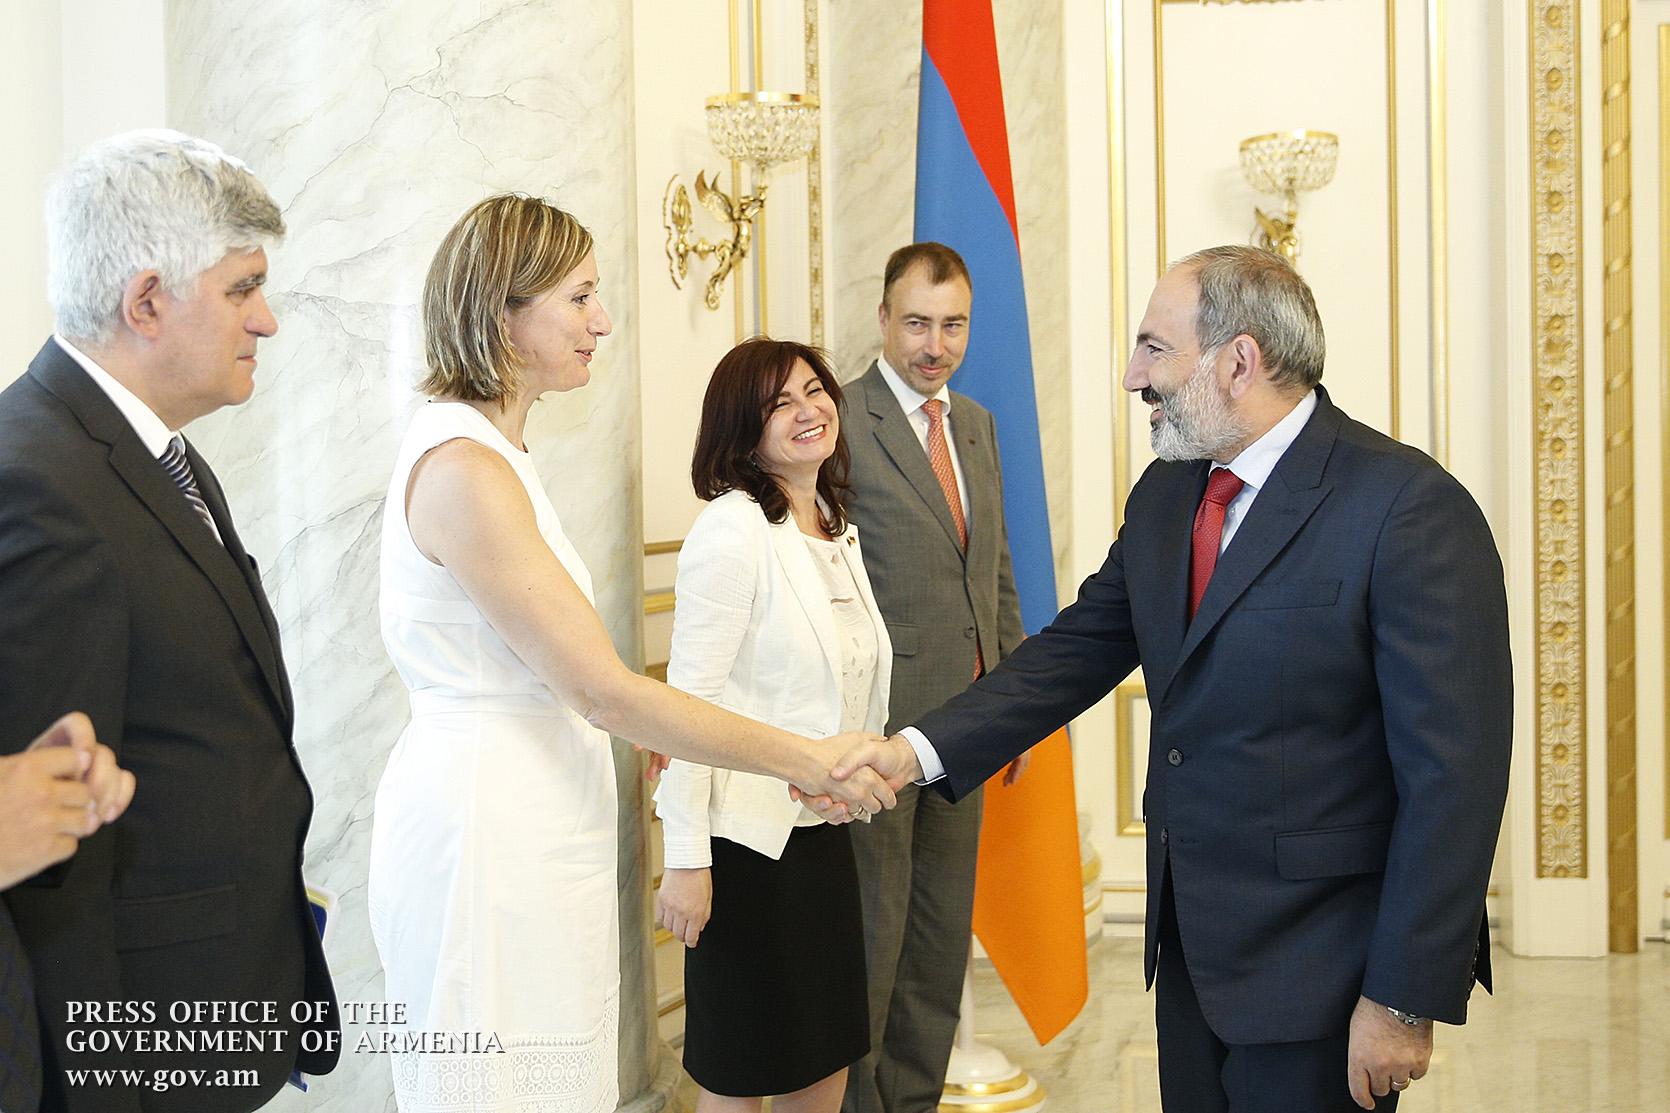 Եվրամիությունը պատրաստ է շարունակել օժանդակել Հայաստանին․ Տոյվո Կլաար